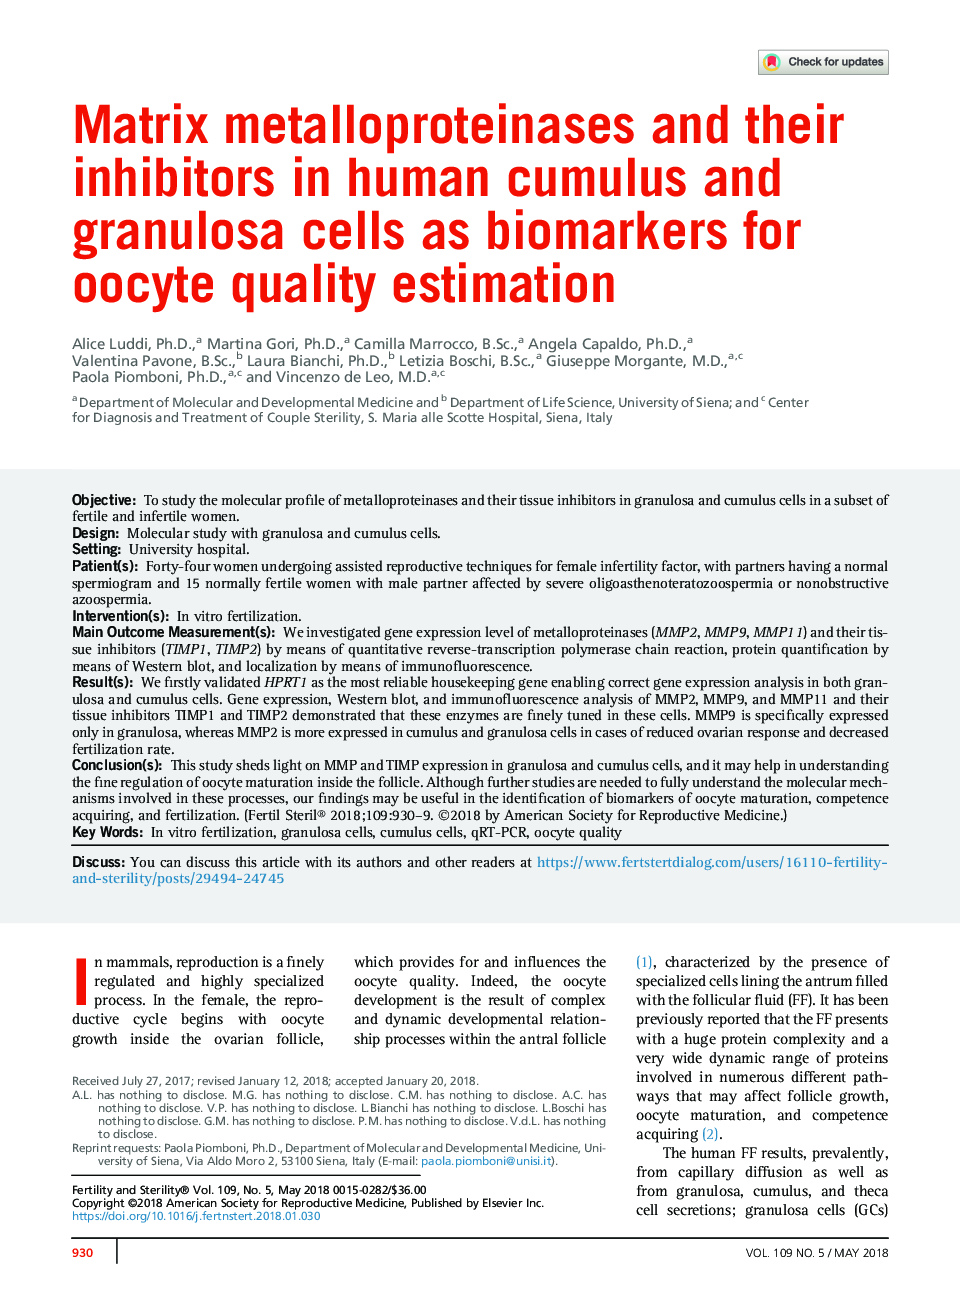 متالوپروتئینازهای ماتریکس و مهارکننده های آنها در سلول های کومولوس و گرانولوزا انسان به عنوان نشانگرهای زیستی برای برآورد کیفیت تخمک 